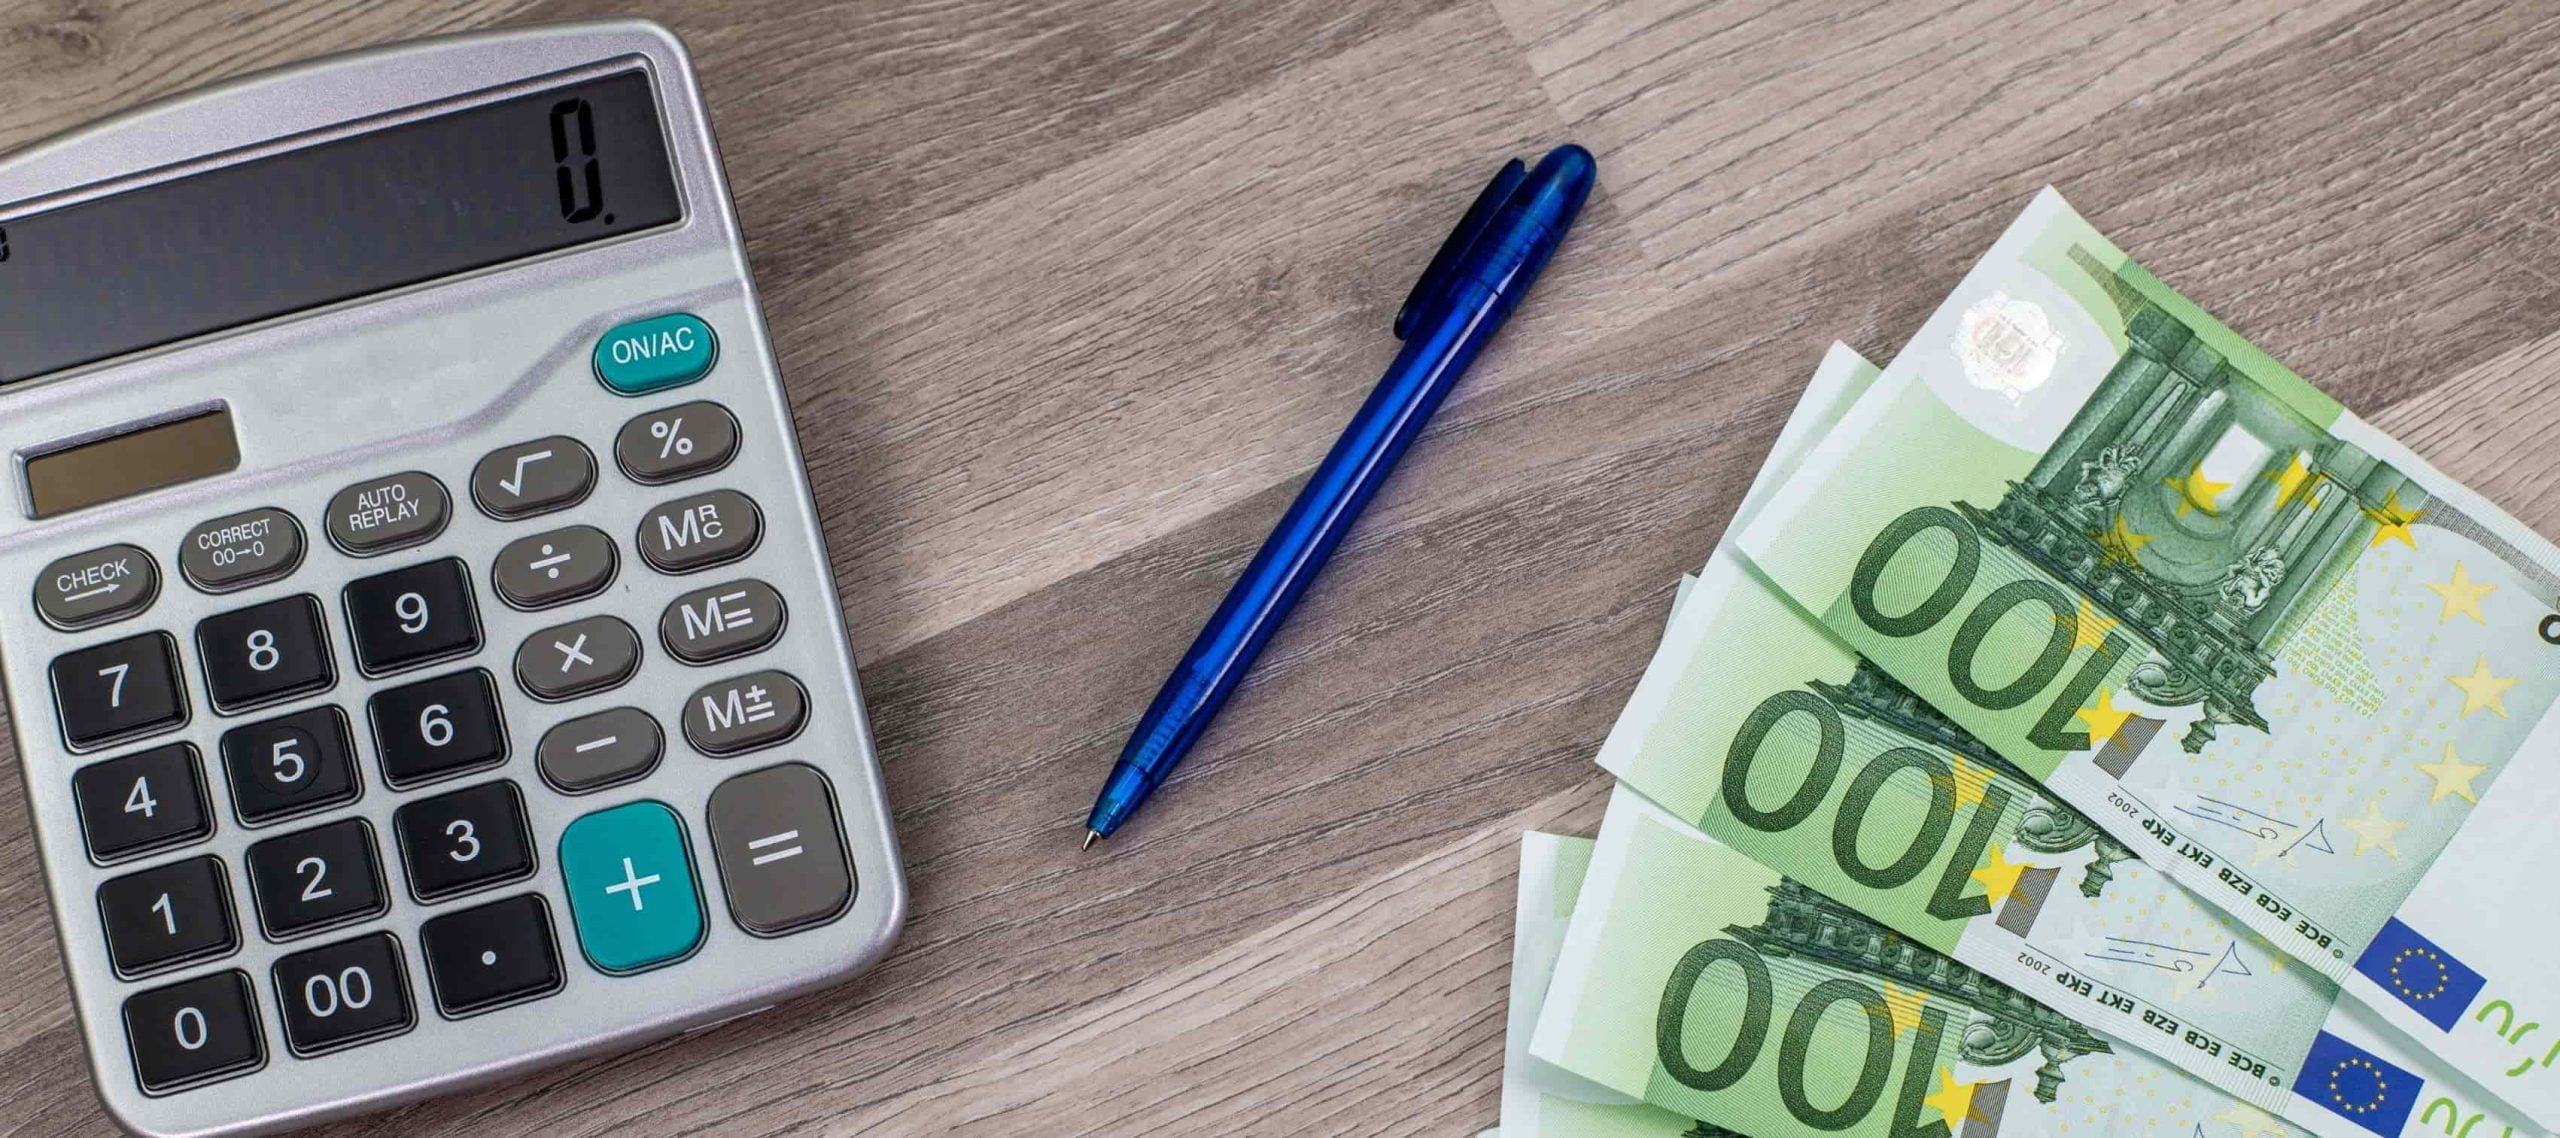 Billetes en euros y calculadora de una persona que está revisando información sobre el impuesto de grandes fortunas